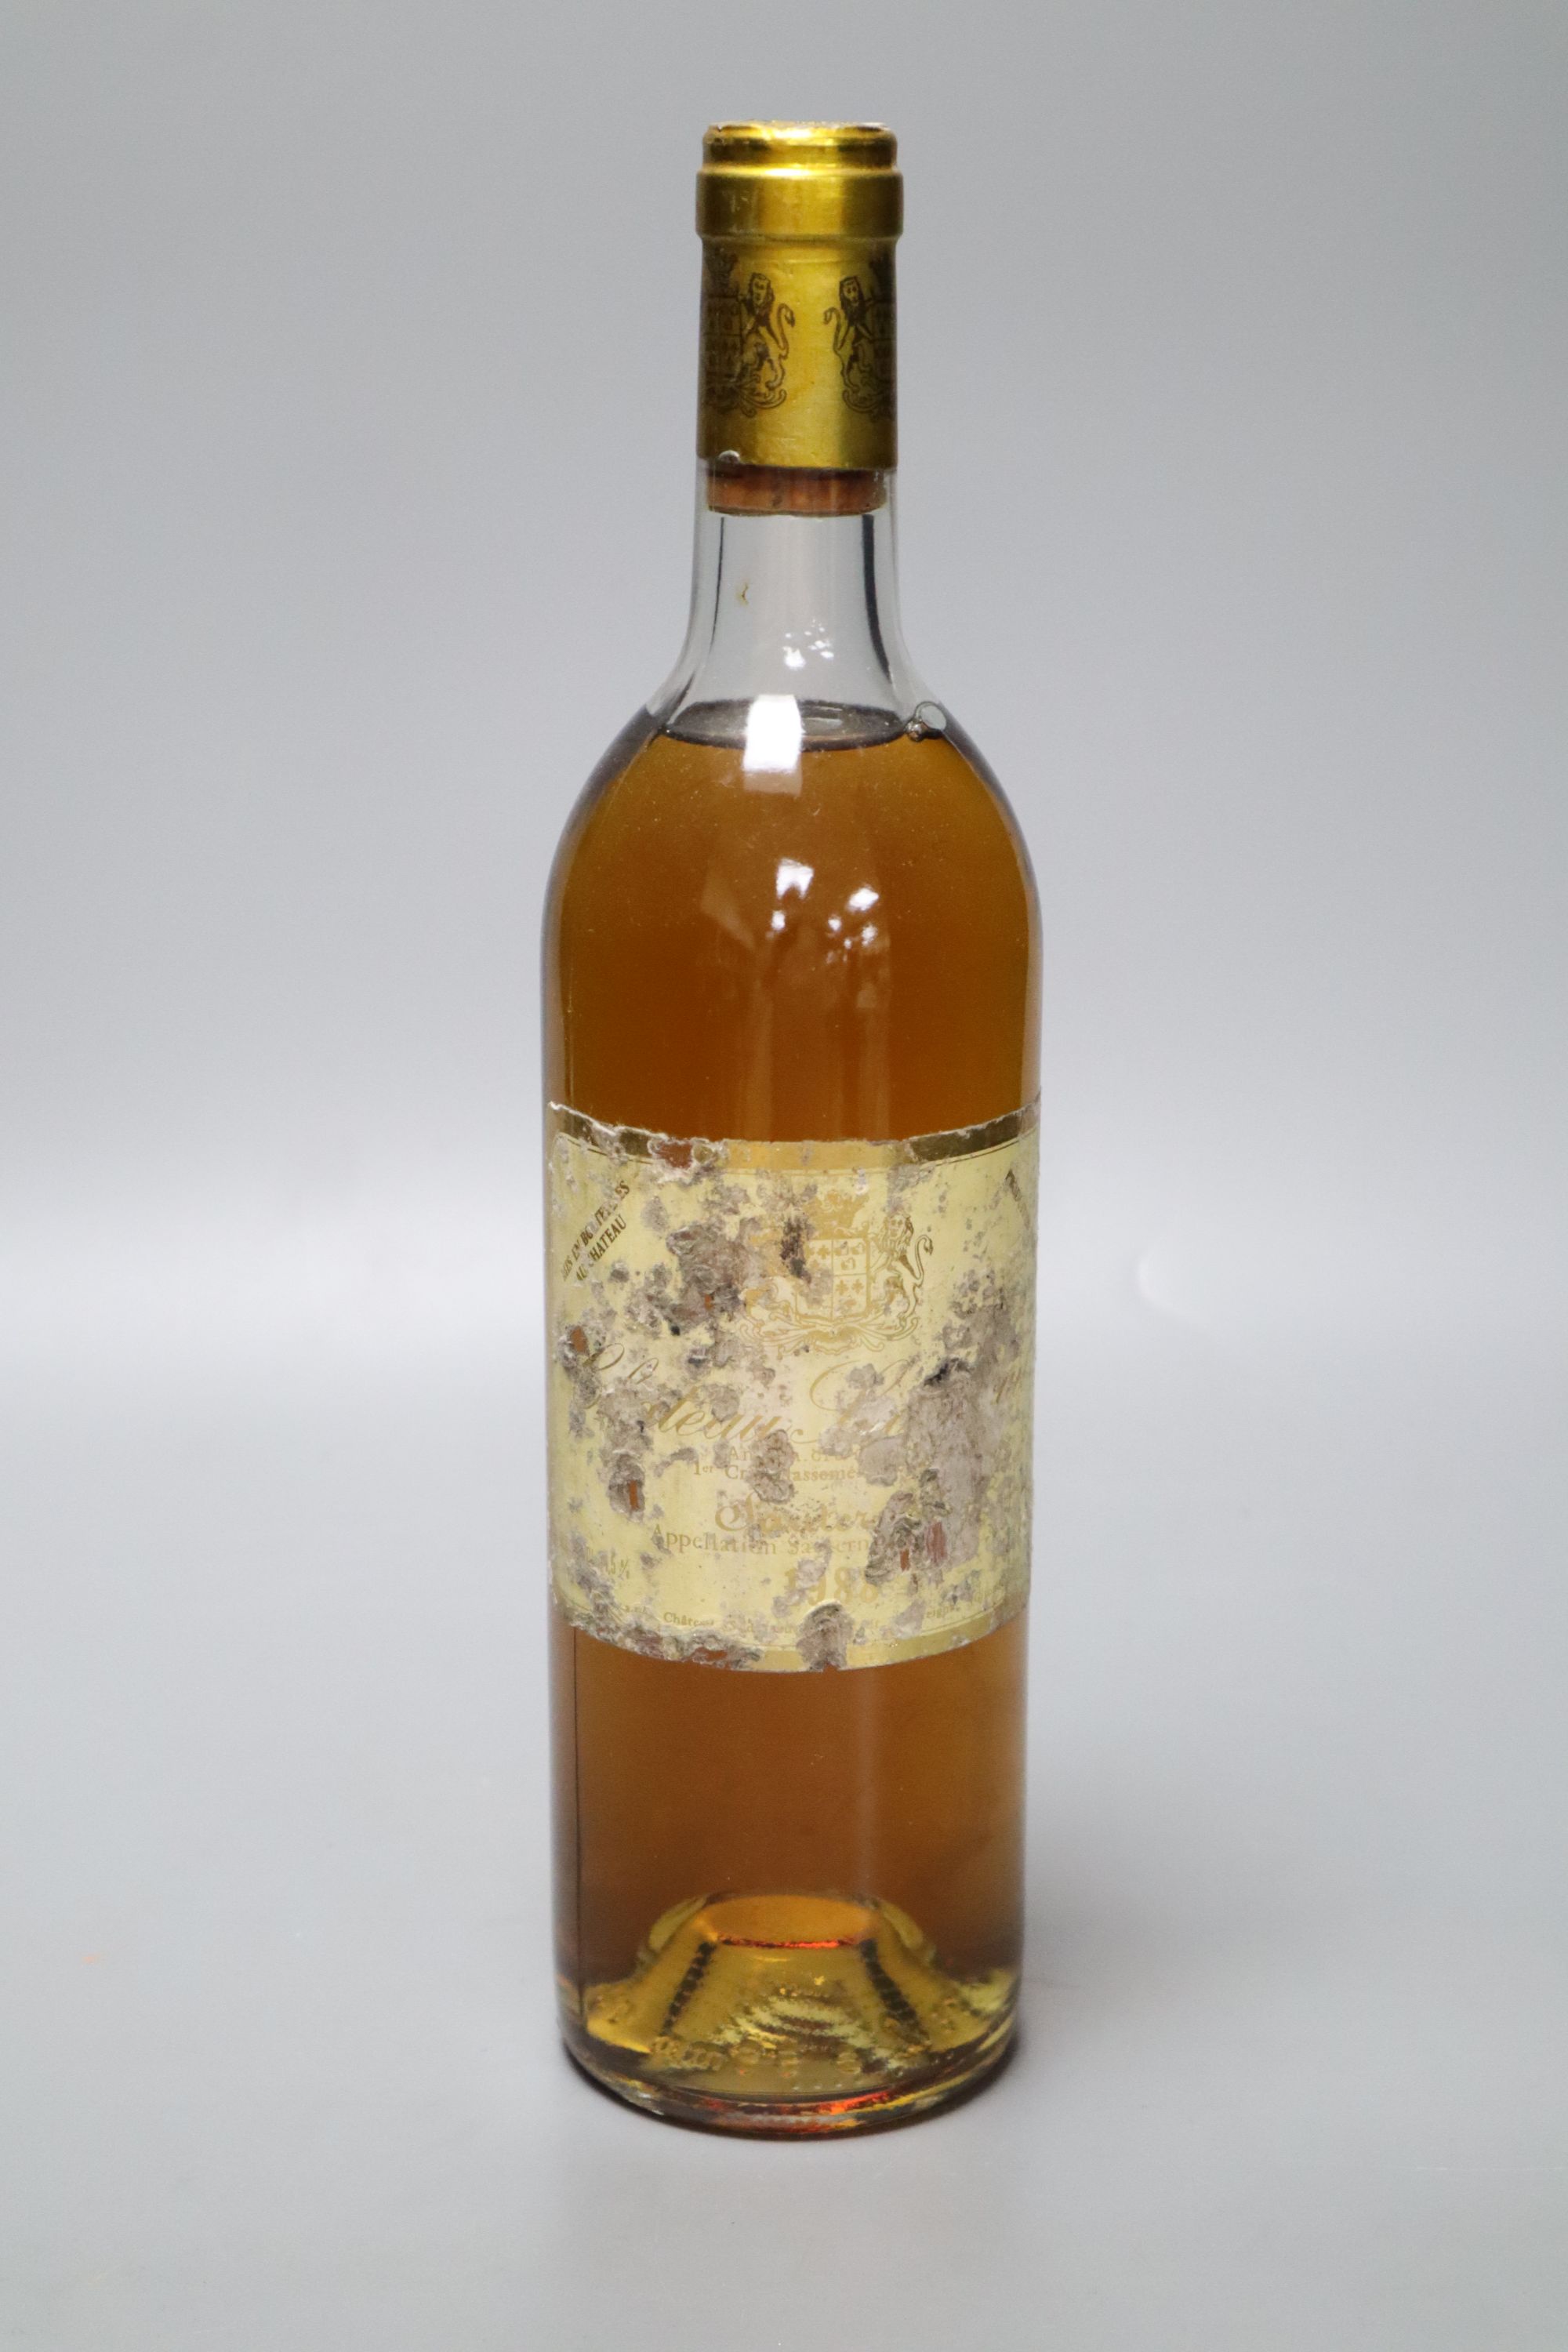 A bottle of Chateau Suduiraut 1988